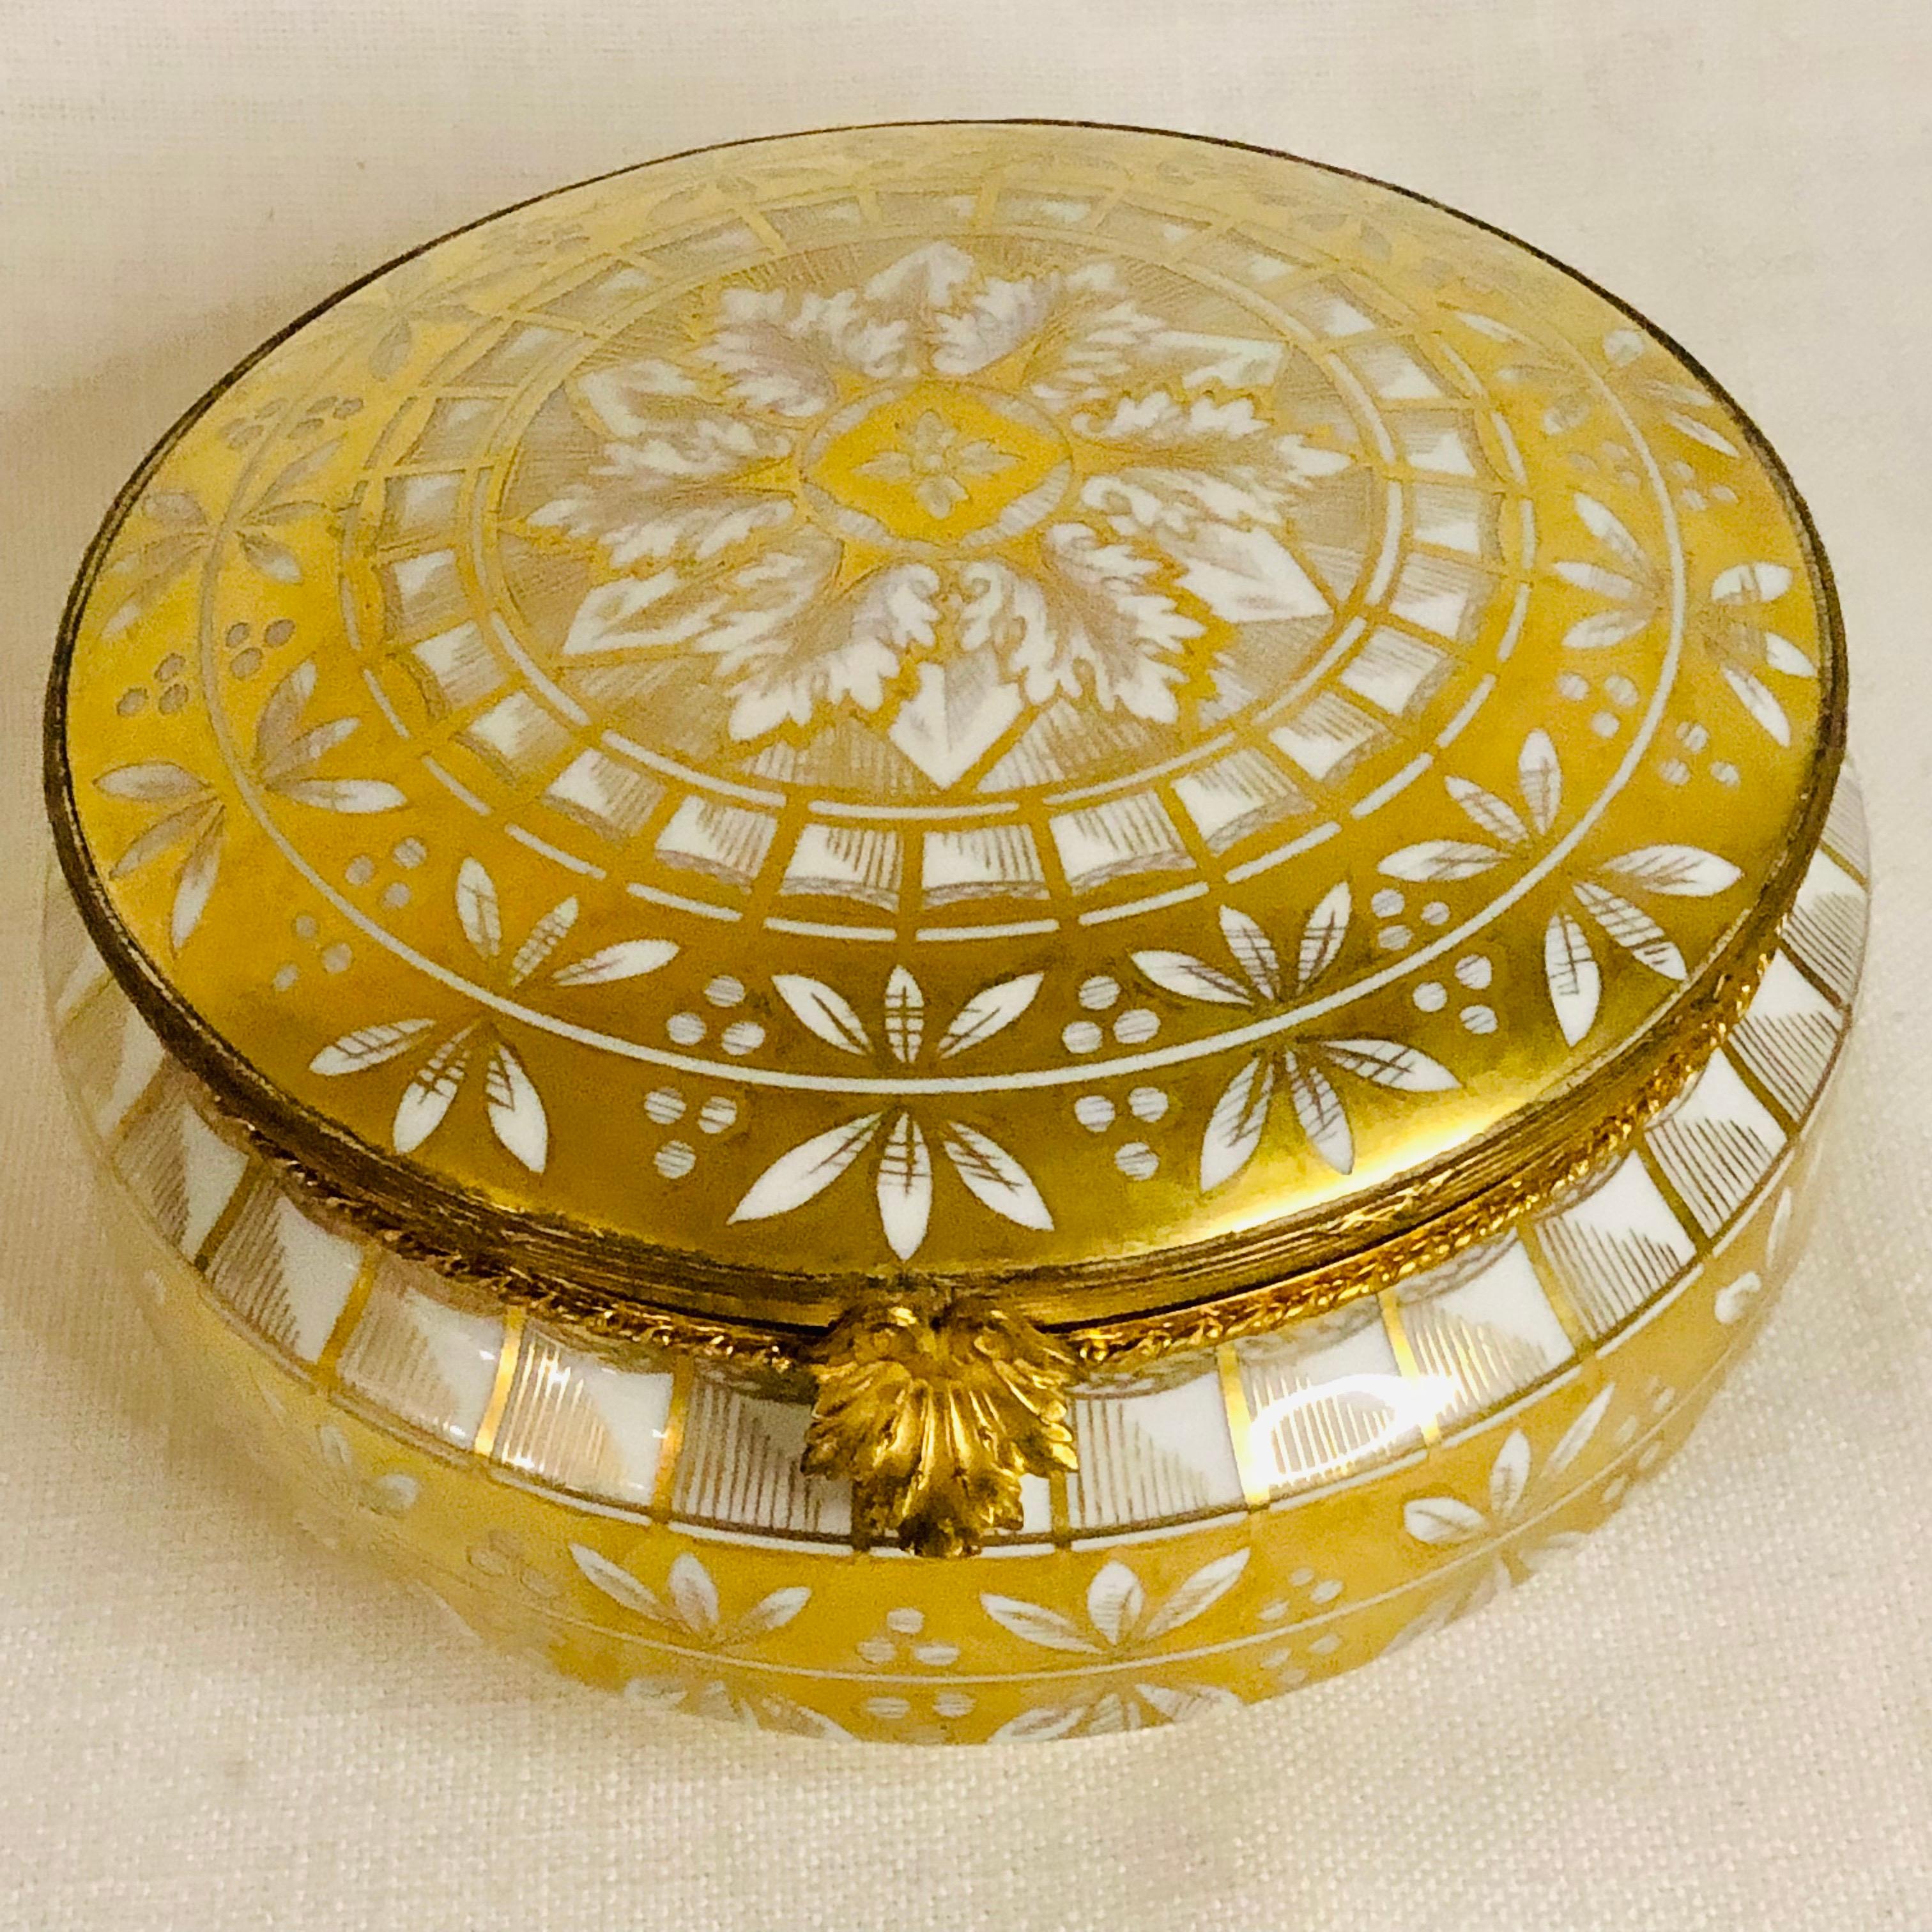 Boîte en porcelaine Le Tallec avec décoration peinte en or sur fond de porcelaine blanche